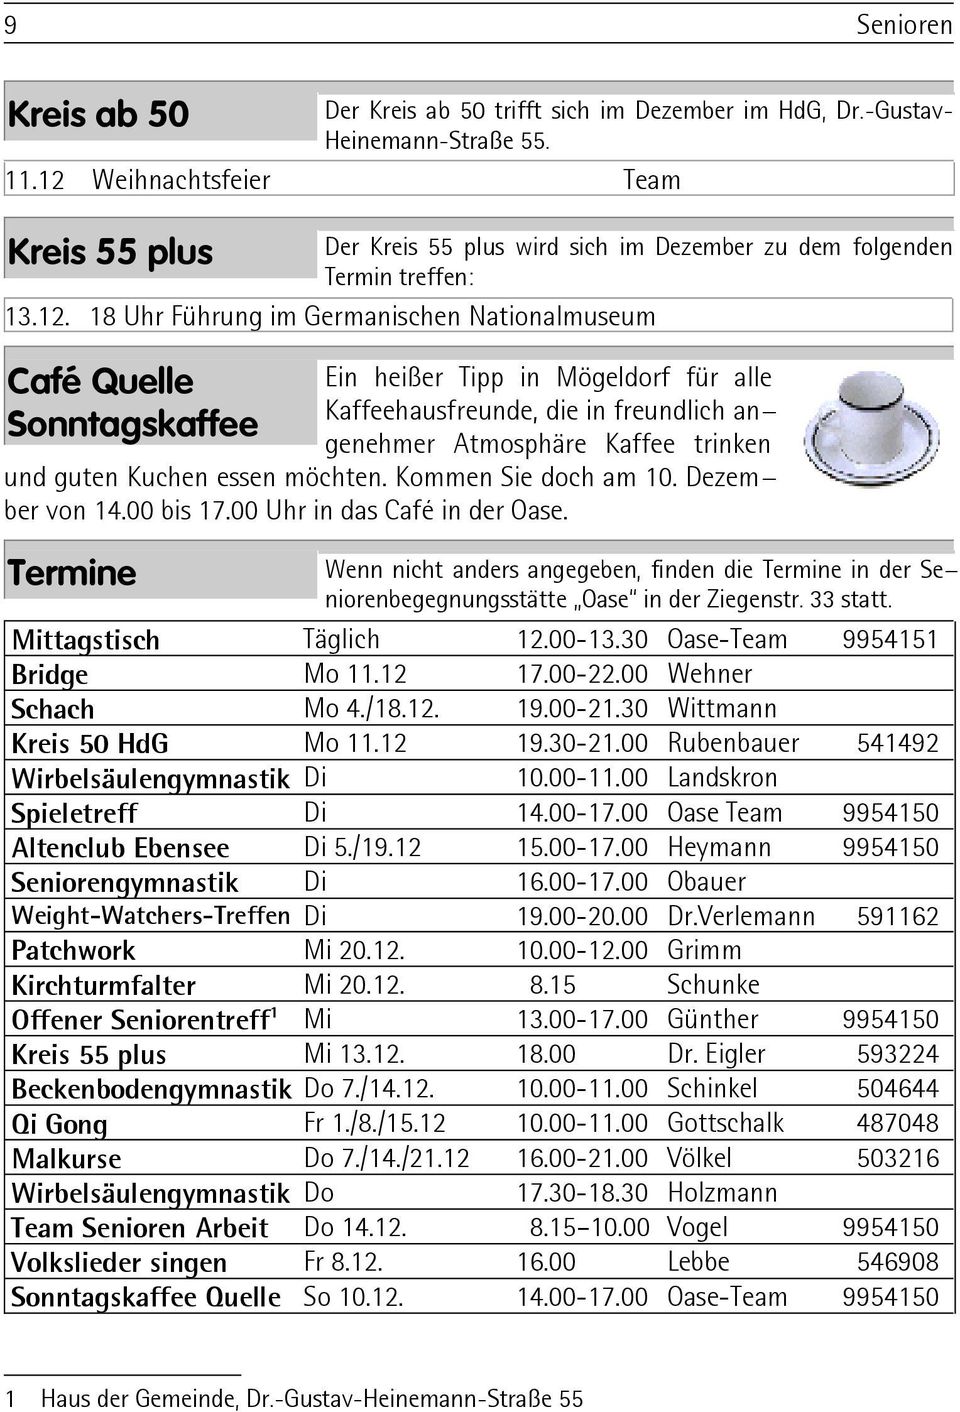 heißer Tipp in Mögeldorf für alle Kaffeehausfreunde, die in freundlich angenehmer Atmosphäre Kaffee trinken und guten Kuchen essen möchten. Kommen Sie doch am 10. Dezember von 14.00 bis 17.